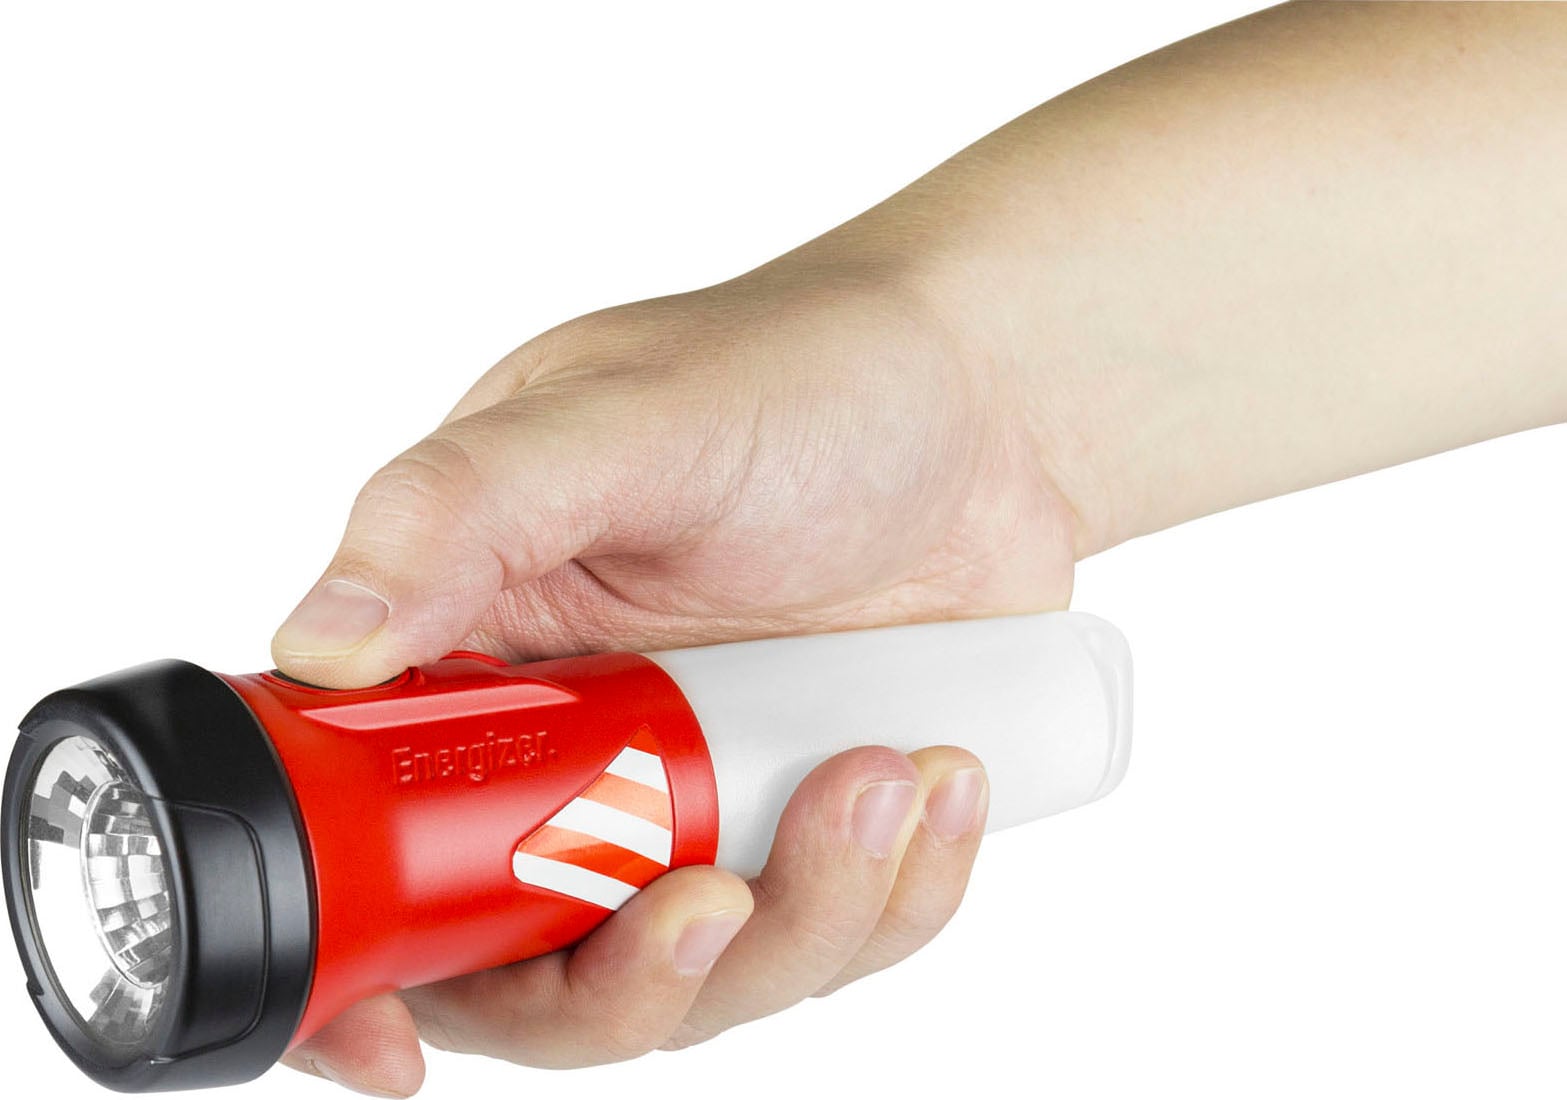 Energizer Taschenlampe »2-in-1 Emergency Lantern«, Kompaktes Design, sorgt für Notfallbeleuchtung, wenn benötigt wird